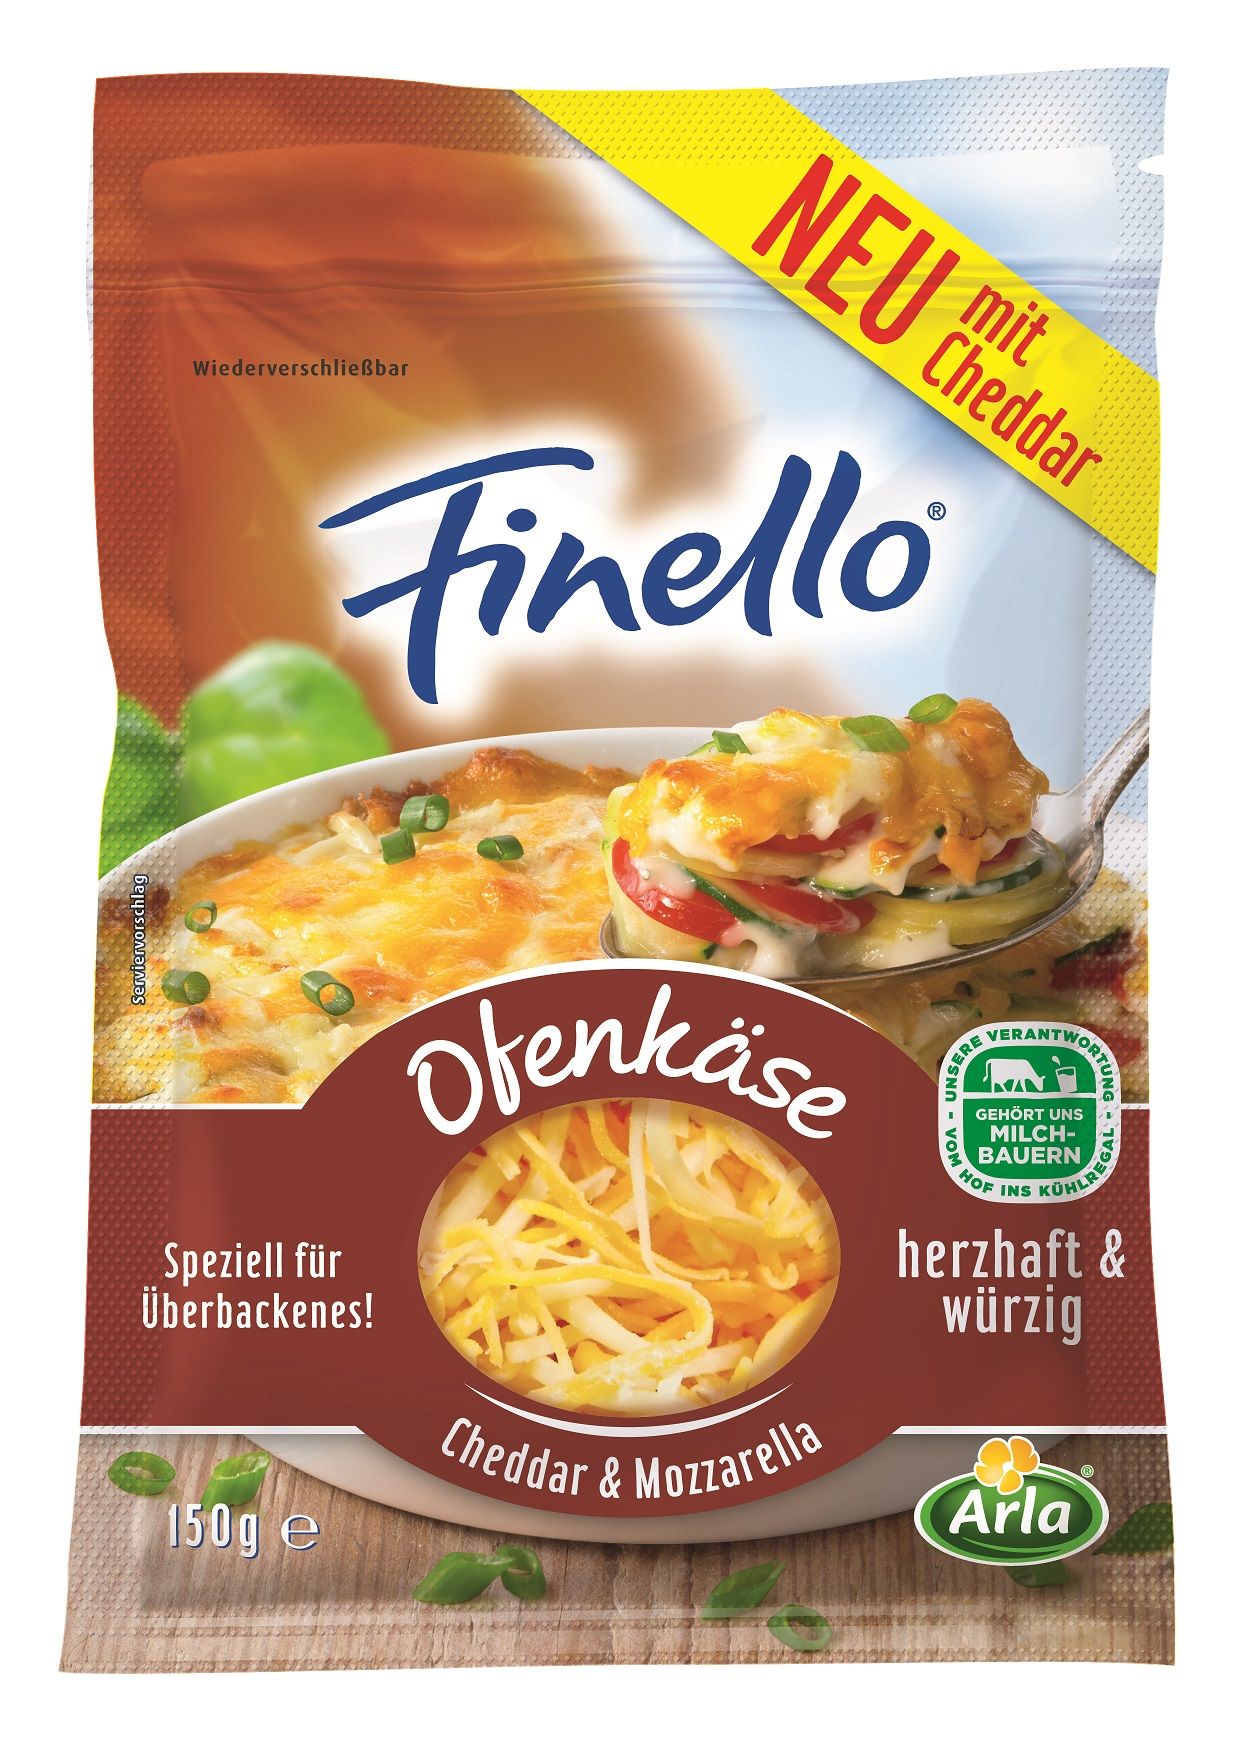 Die Mischung macht’s: Arla führt neuen Finello® Ofenkäse mit Cheddar & Mozzarella ein